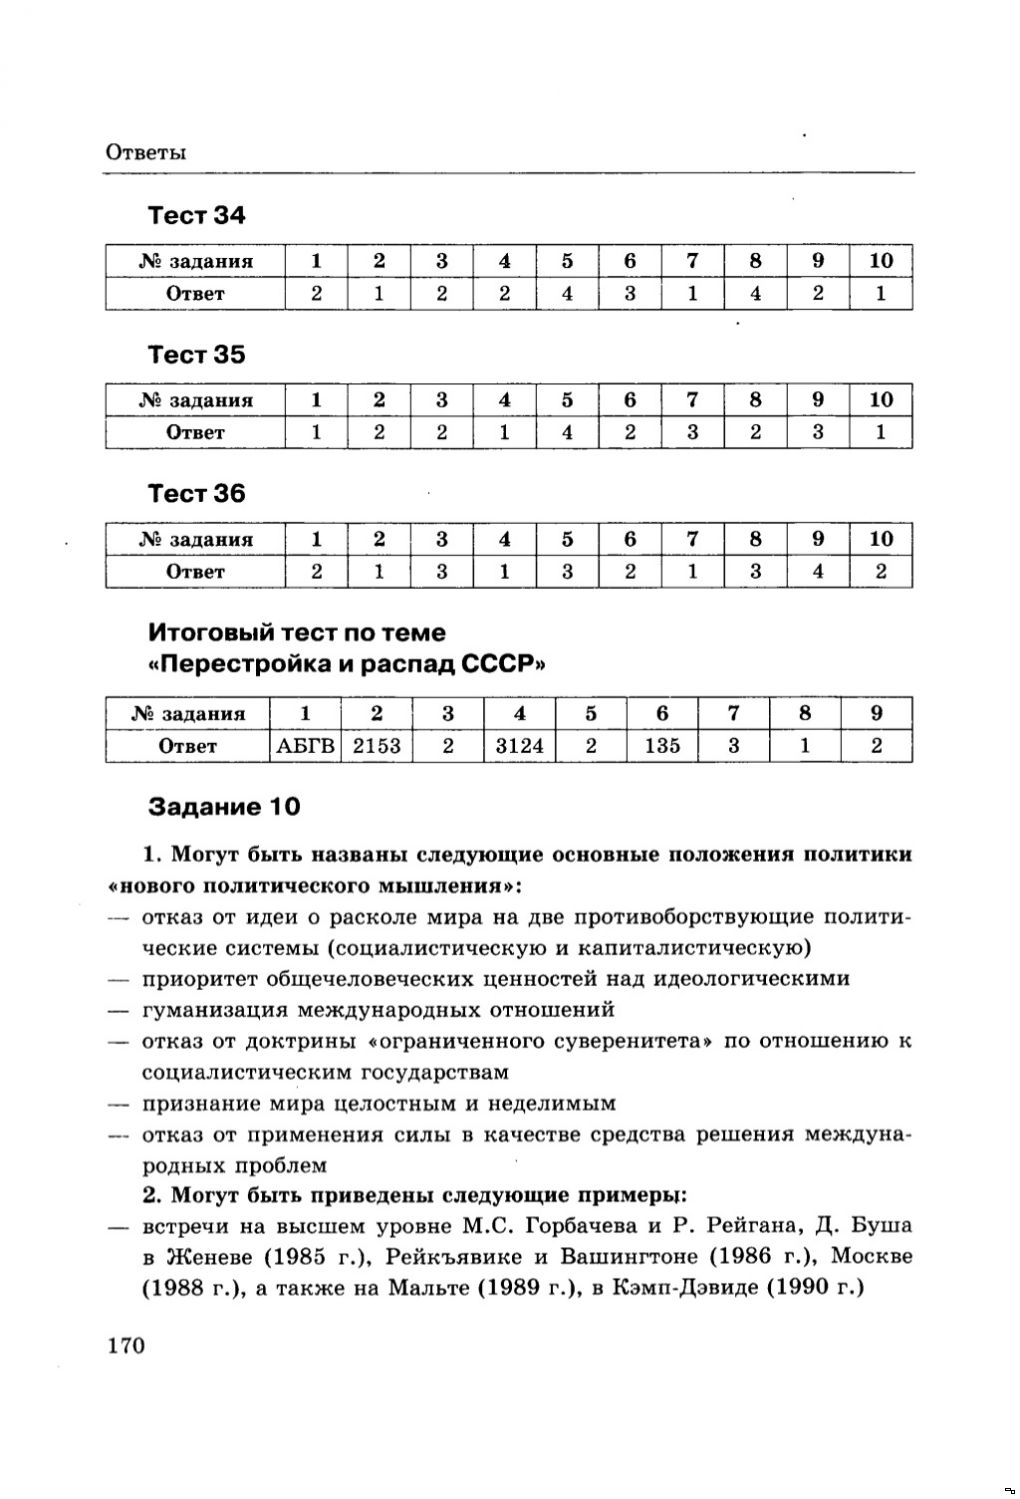 Тесты история россии 11 класс ответы